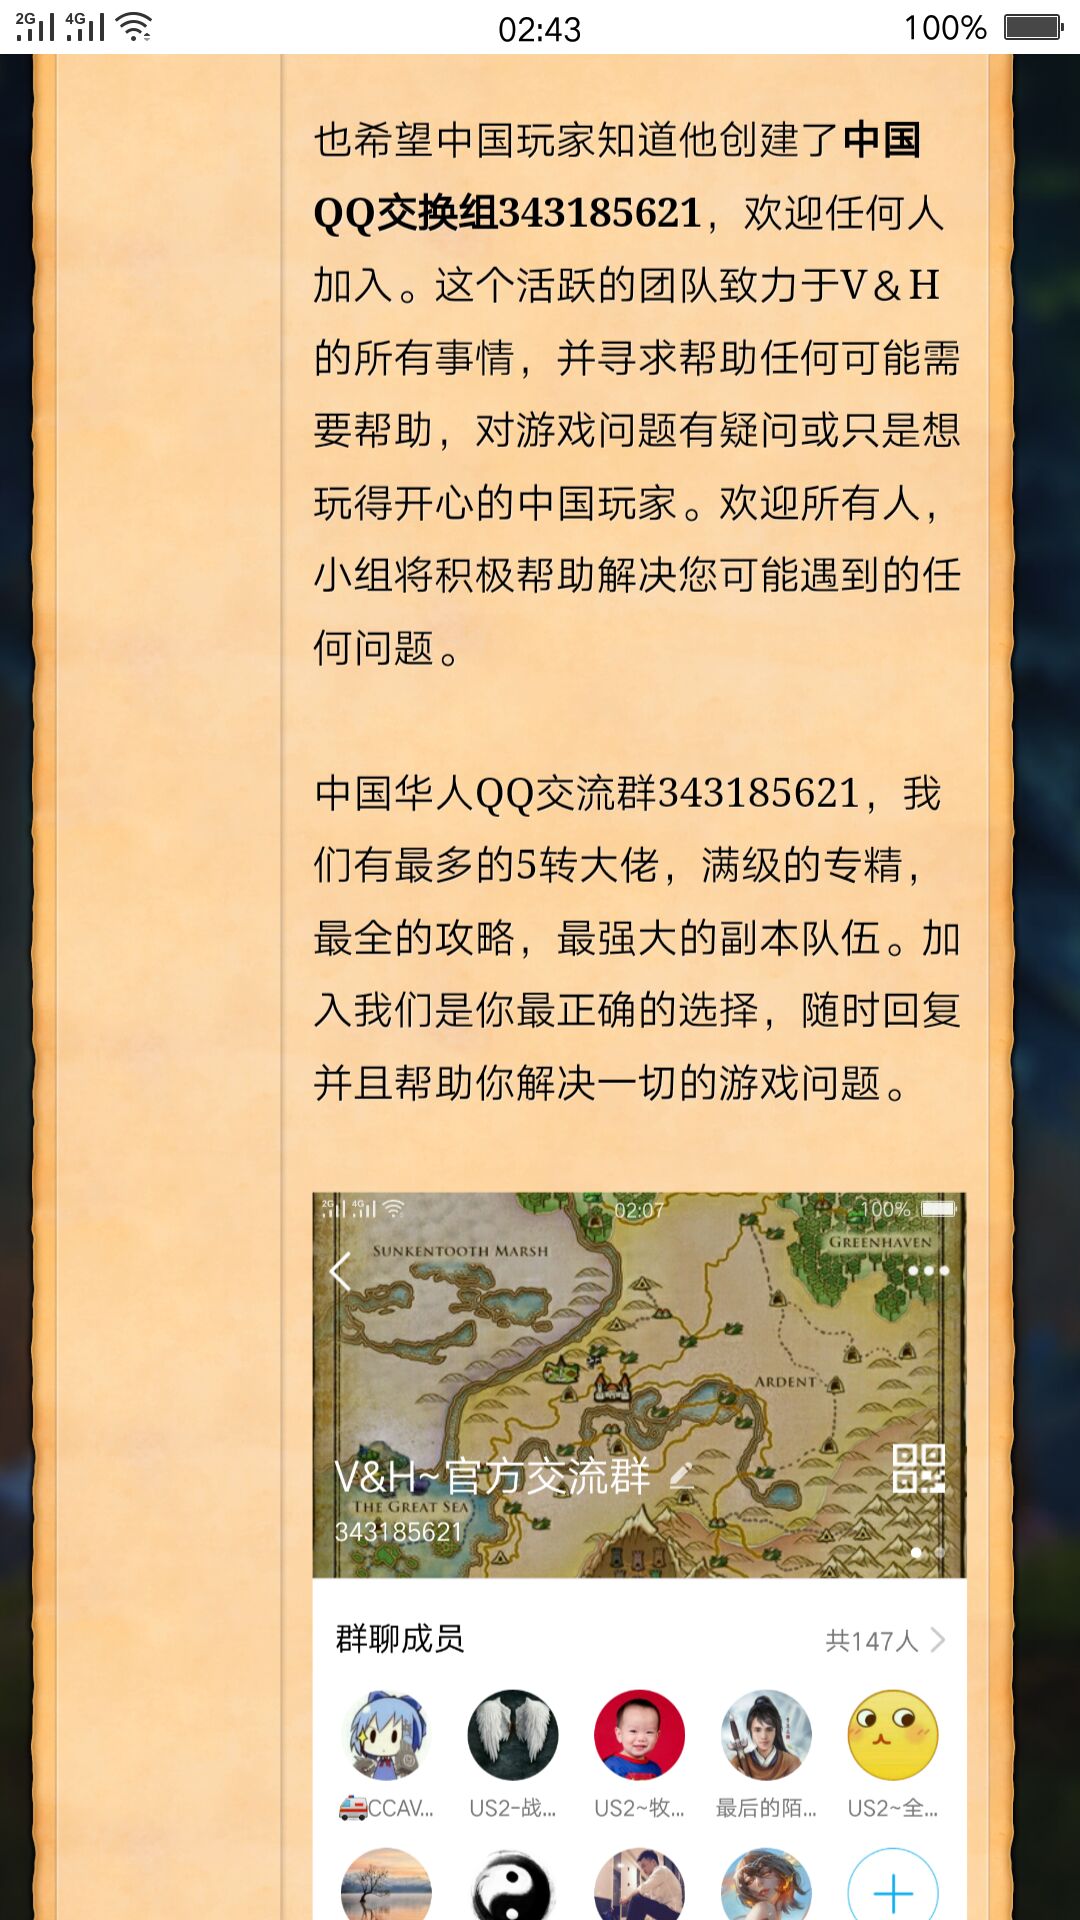 官方认证中国玩家交流群现已上线！欢迎大家加入！